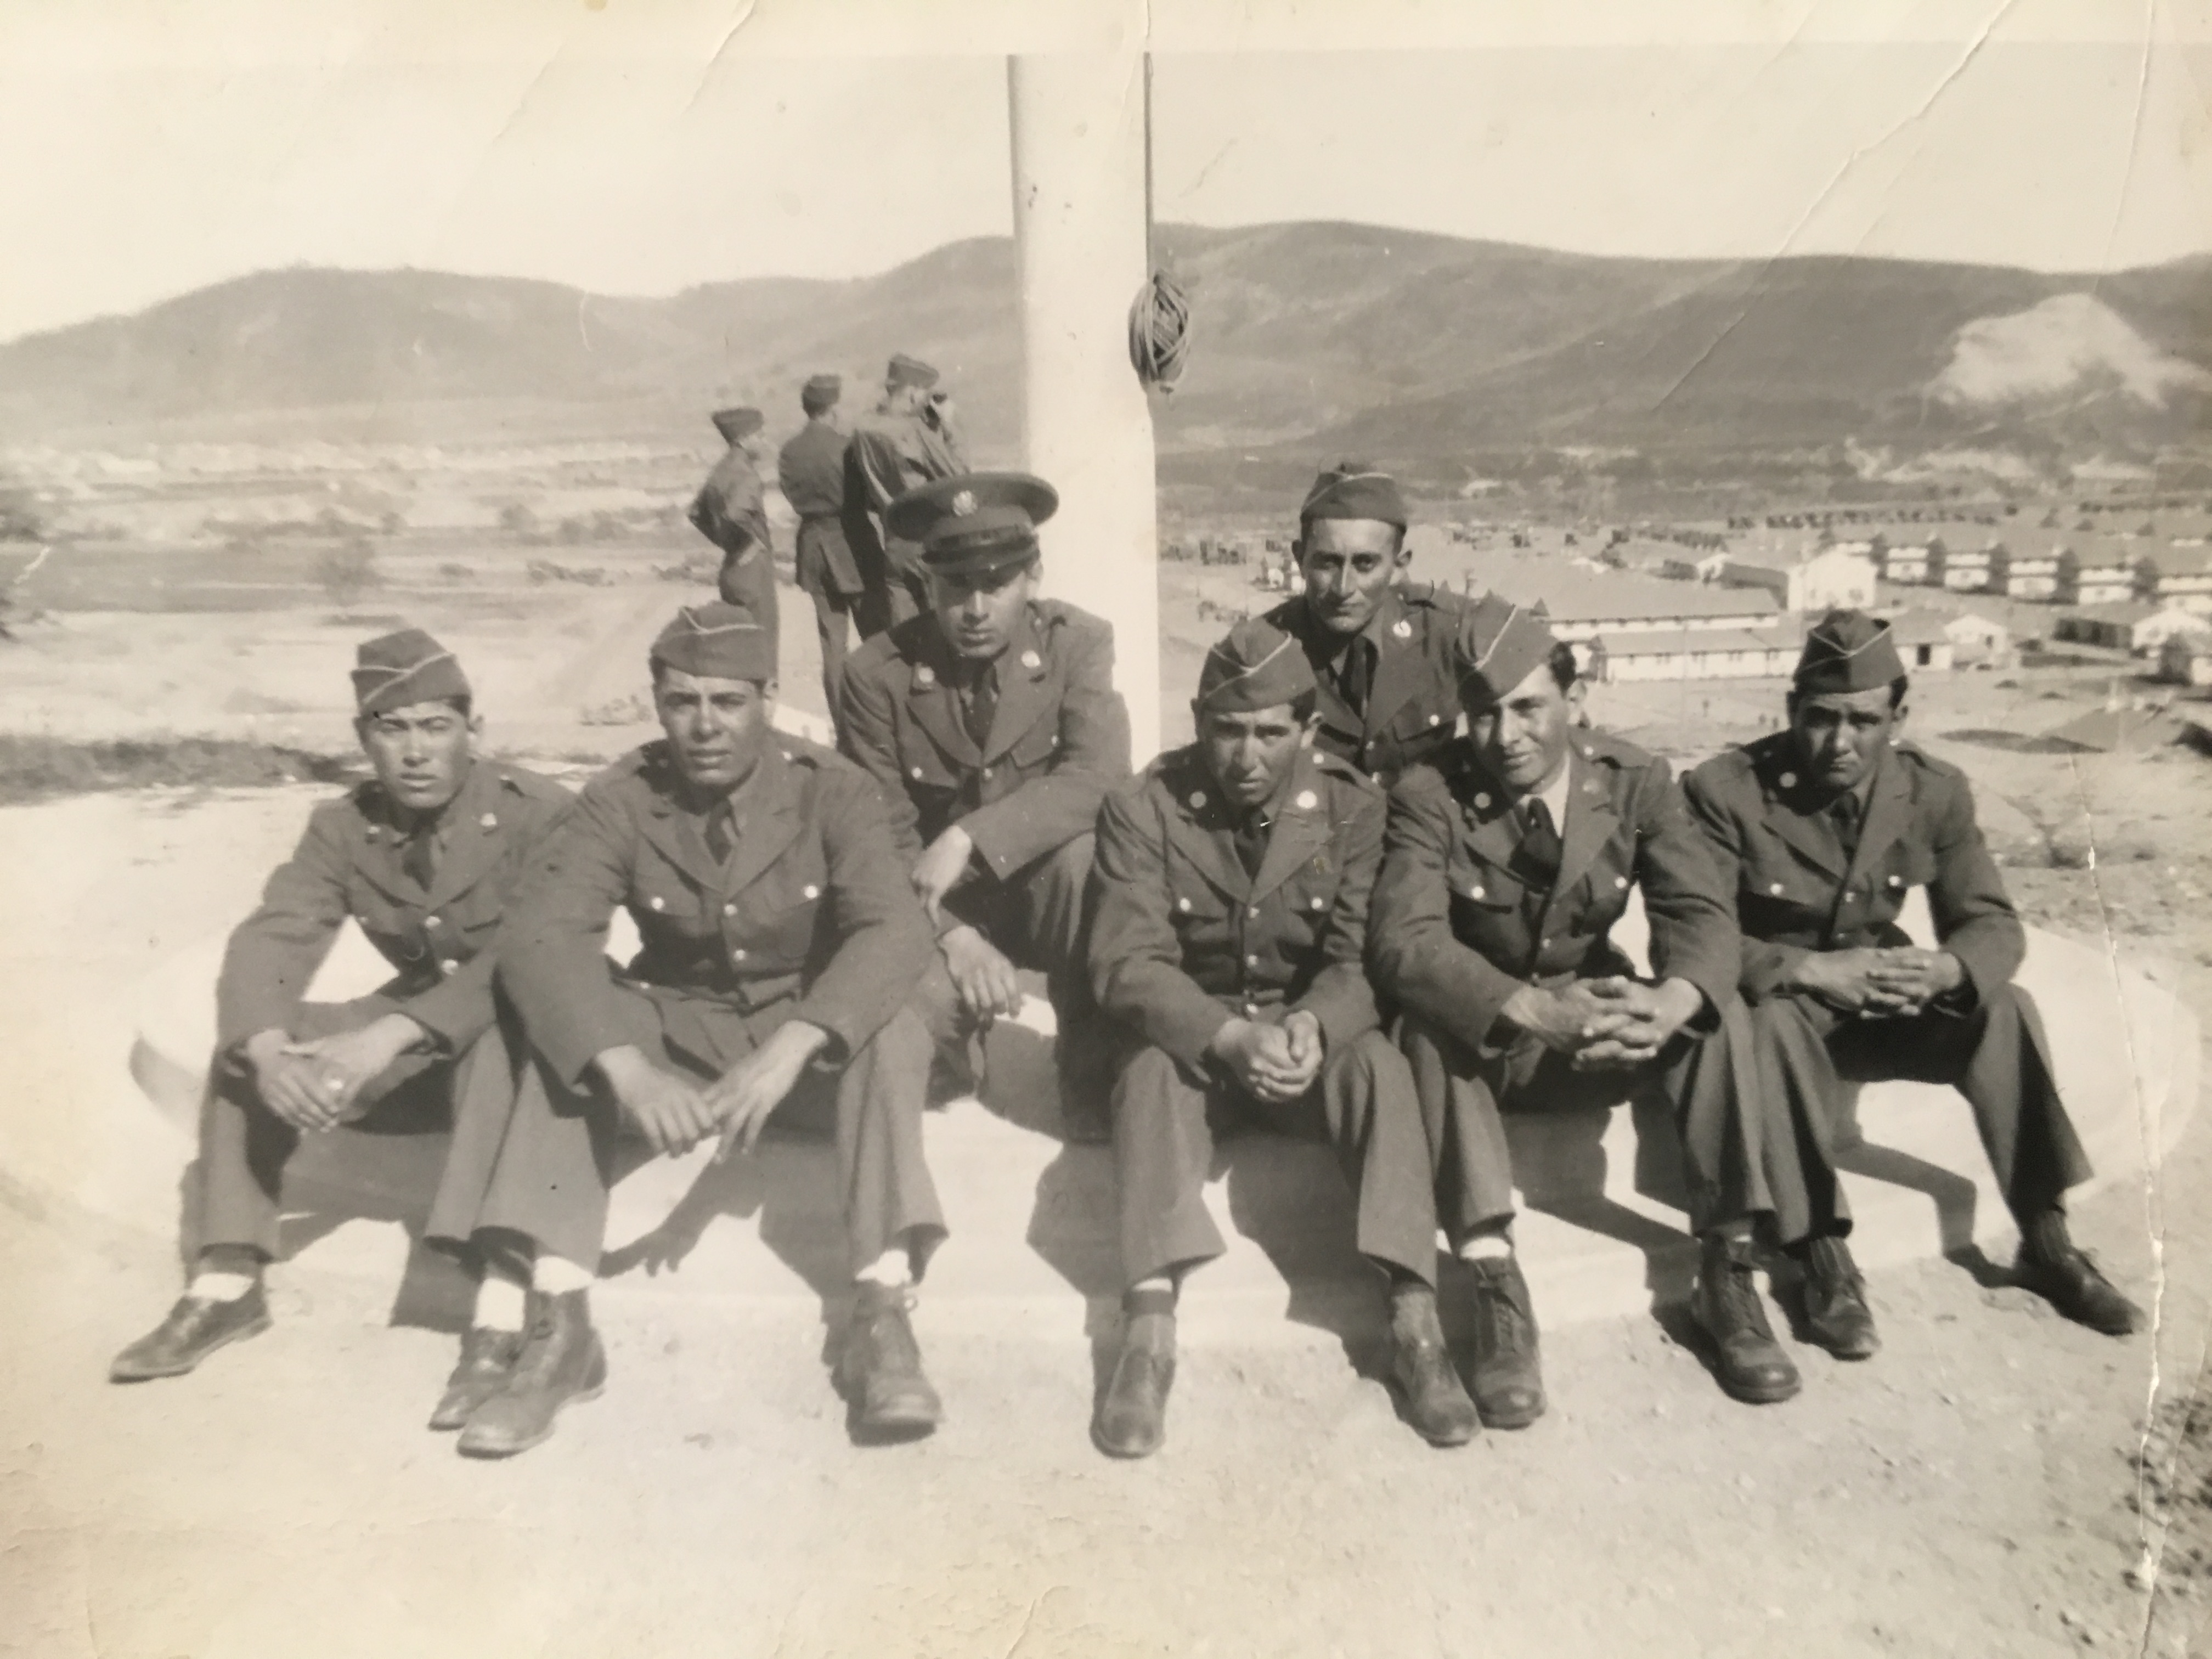 Photo of men in uniform